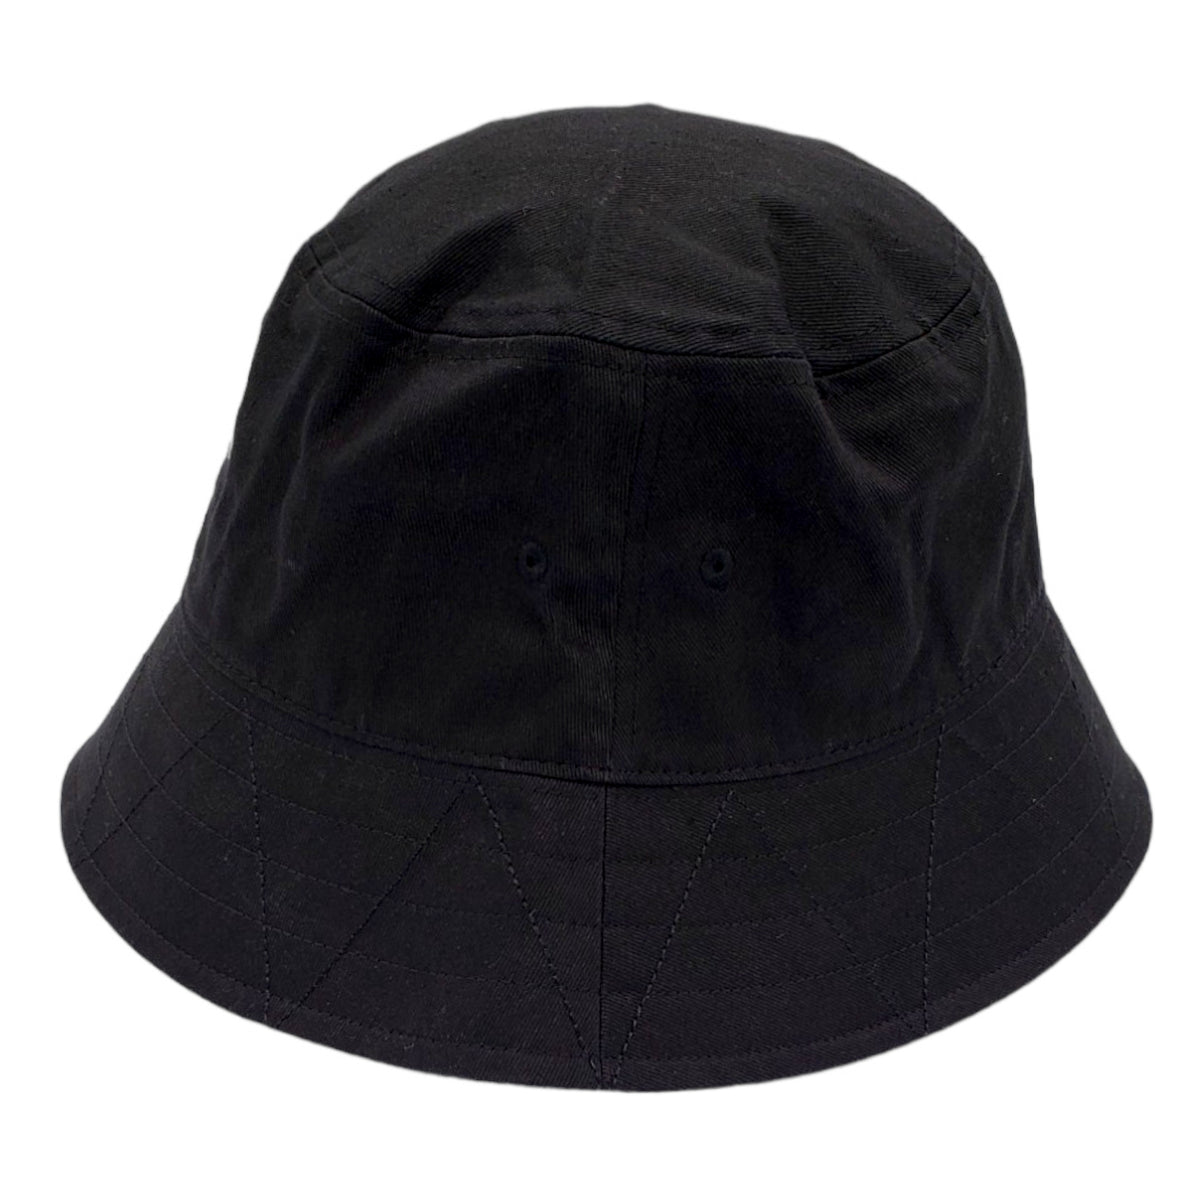 Garbstore Black "Wax" Bucket Hat